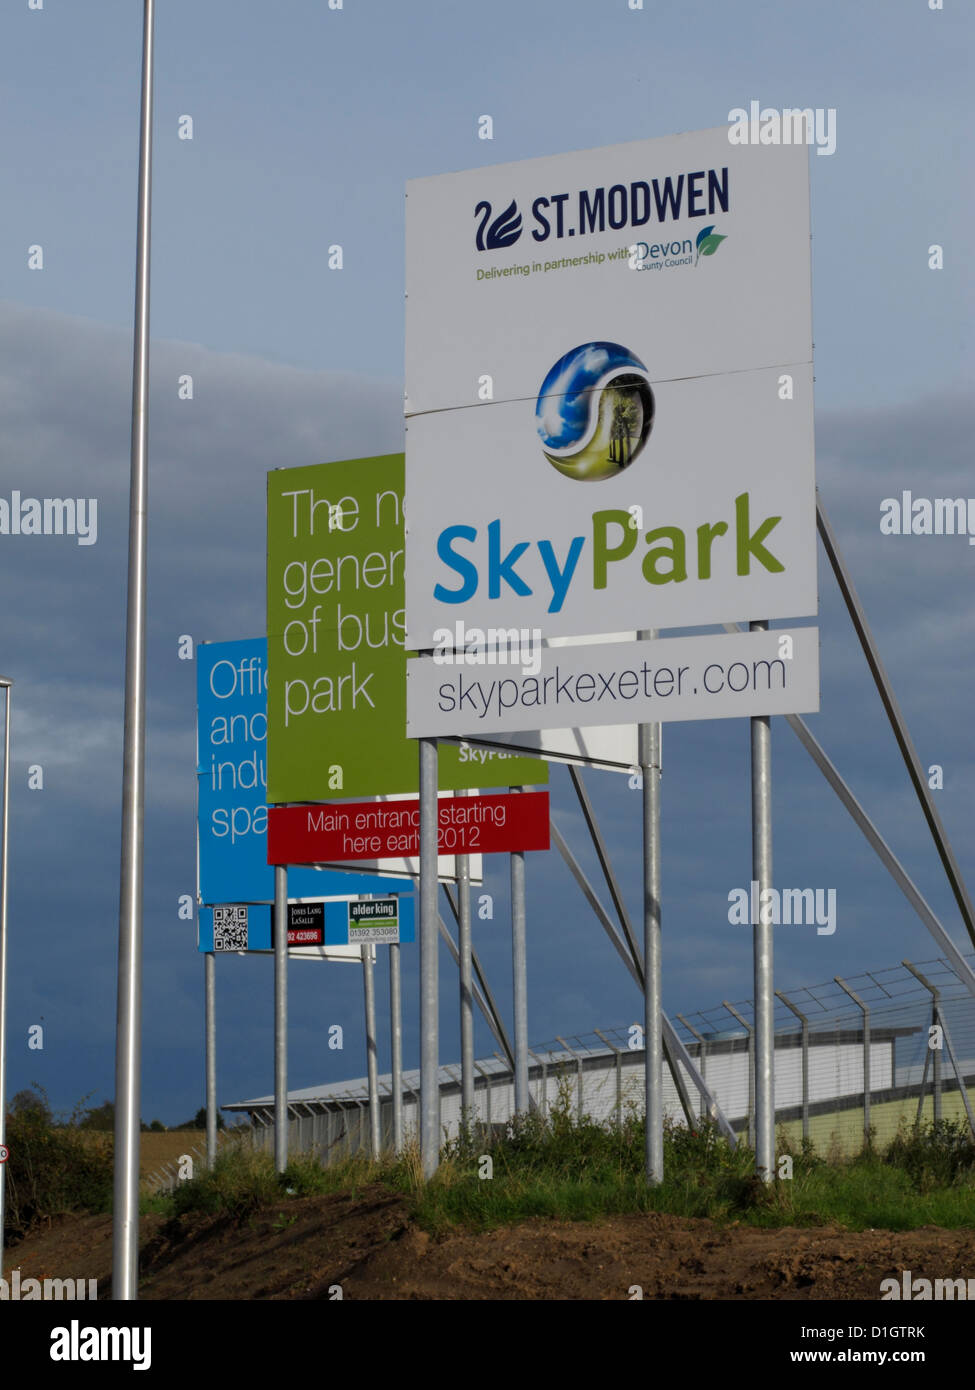 Skypark neue kommerzielle Entwicklung von Bauträger St. Modwen in der Nähe von Exeter Flughafen Devon UK Stockfoto